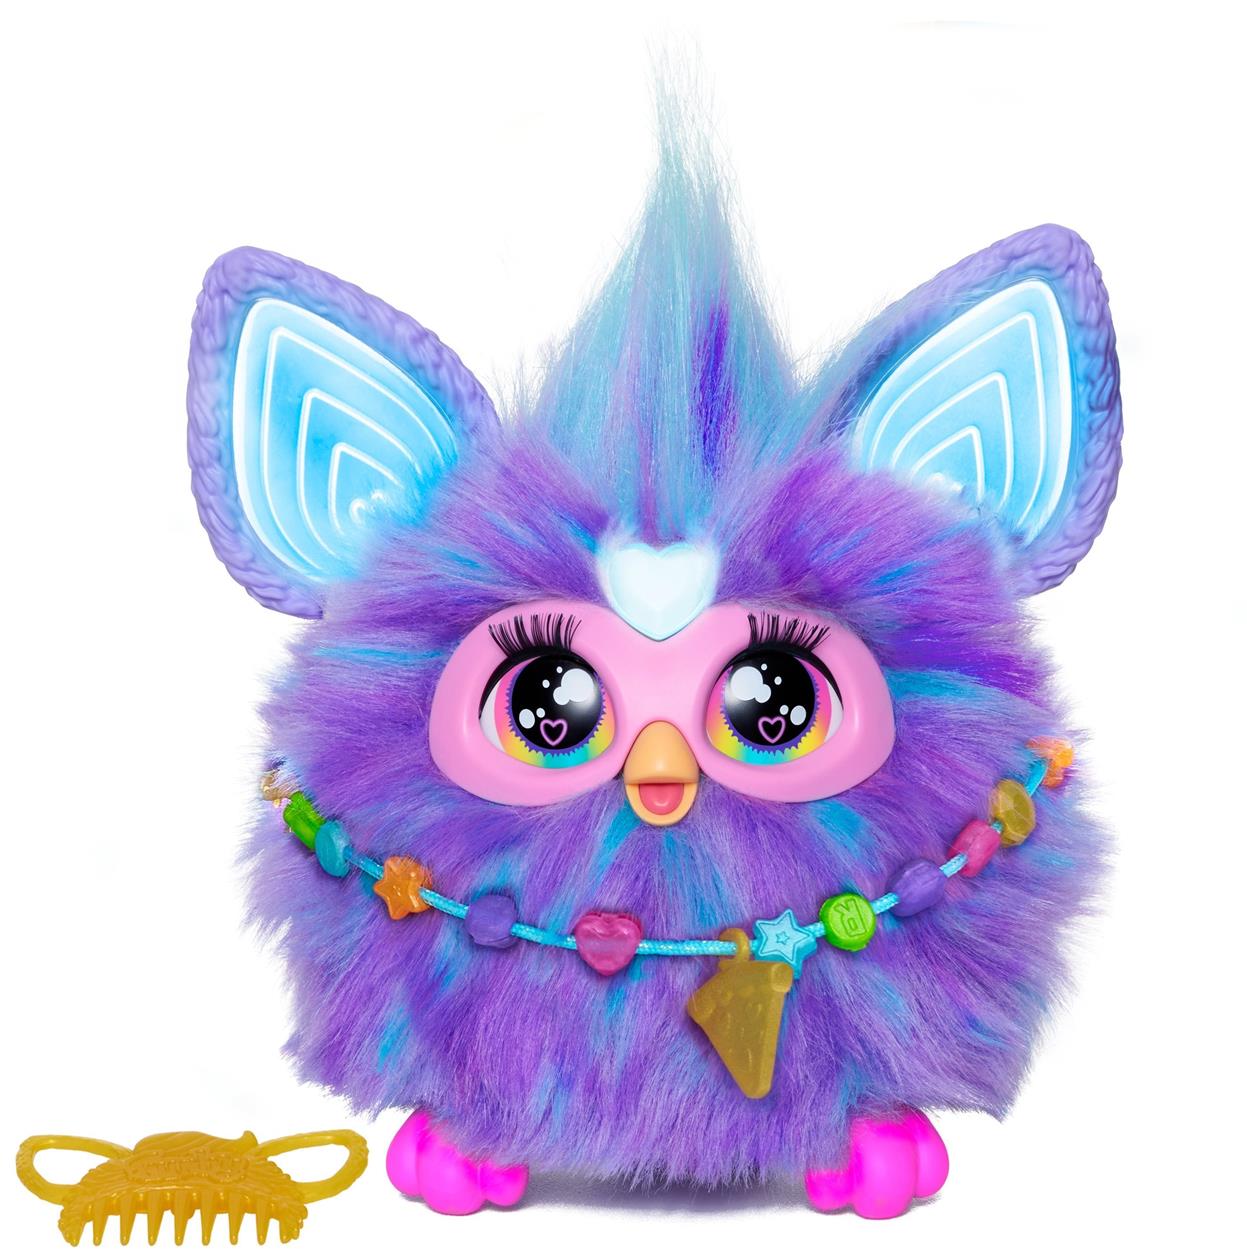 Interaktívna hračka Furby vo fialovej farbe